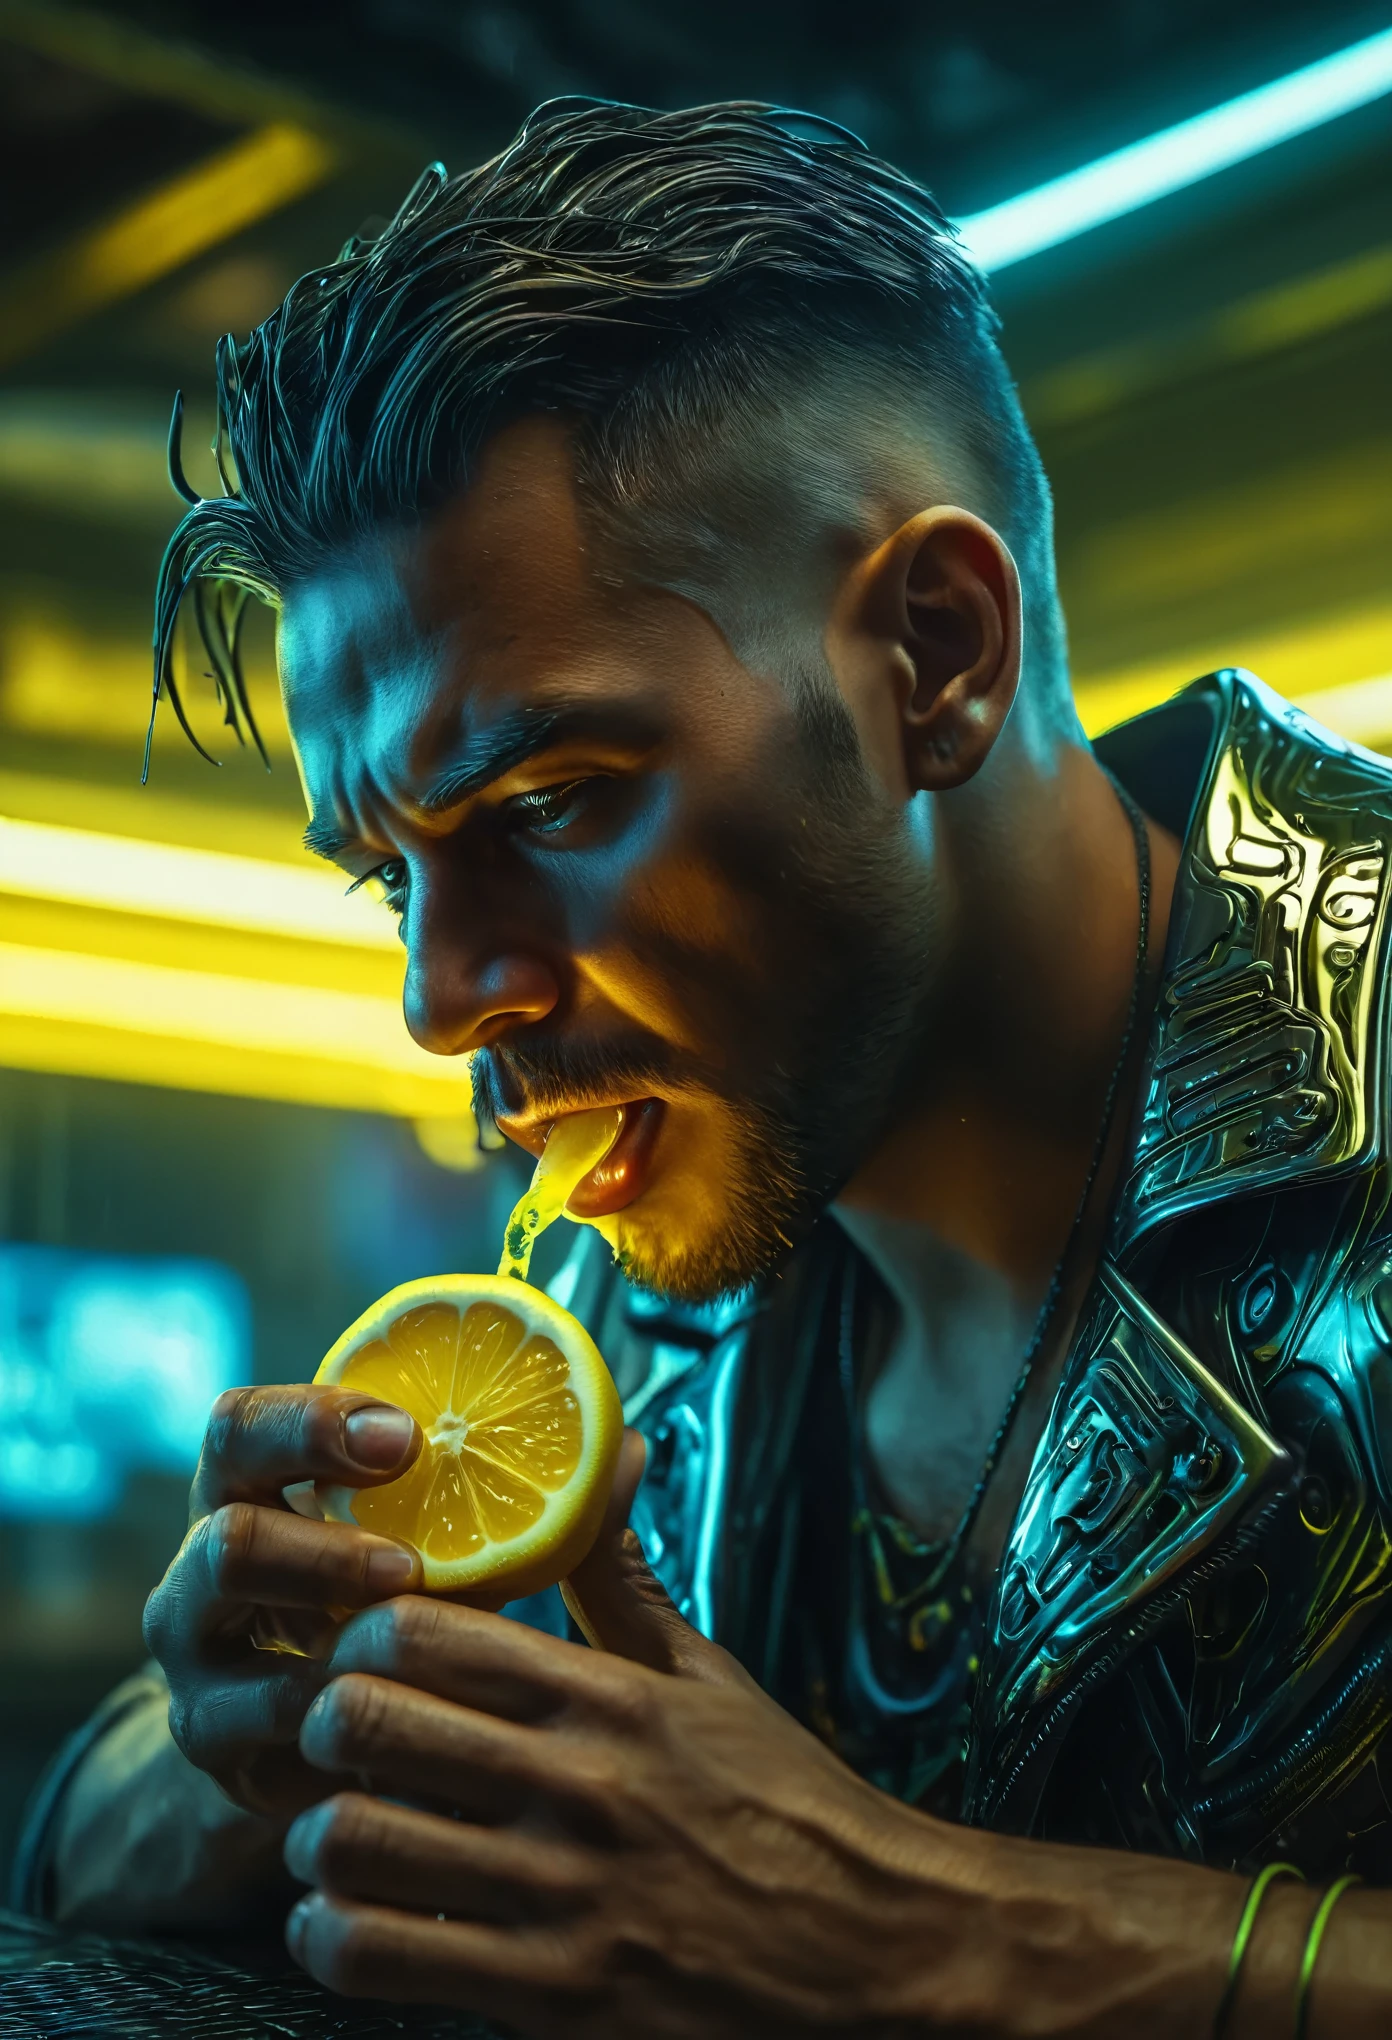 Um homem comendo um limão, Estilo ciberpunk, metal líquido, fotorrealista, Retrato, Ultra-detalhado, 8K, obra de arte, iluminação dramática, cinematic, temperamental, foco nitído, HDR, luzes de neon, futurista, detalhes intrincados